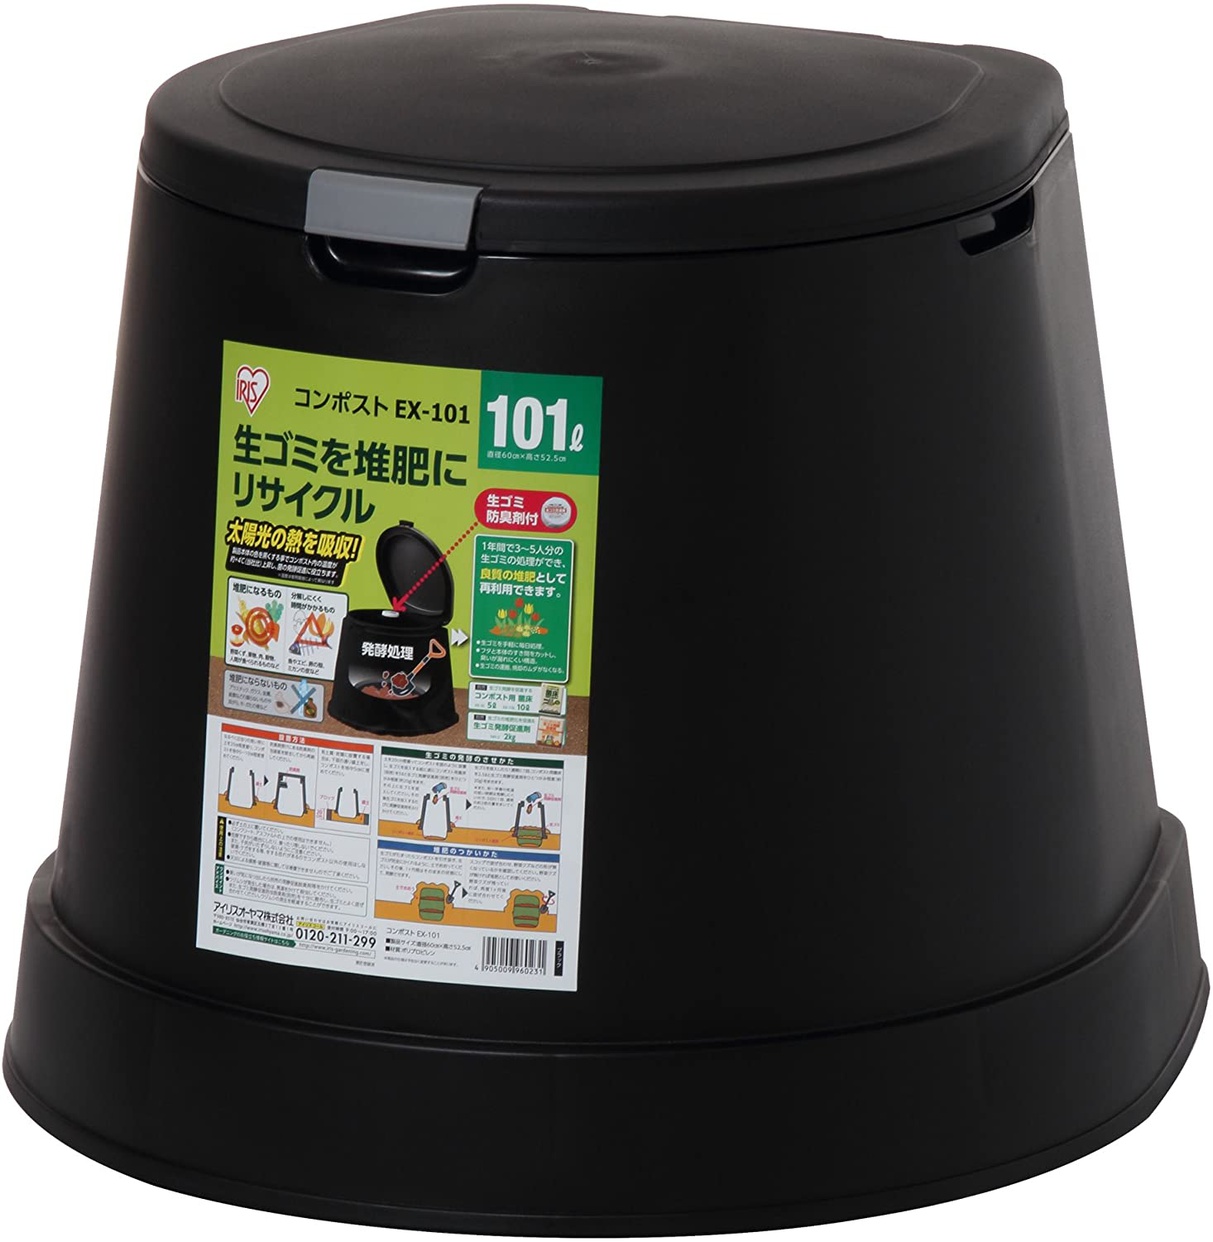 生ゴミ処理機おすすめ商品：IRIS OHYAMA(アイリスオーヤマ) エココンポスト EX-101